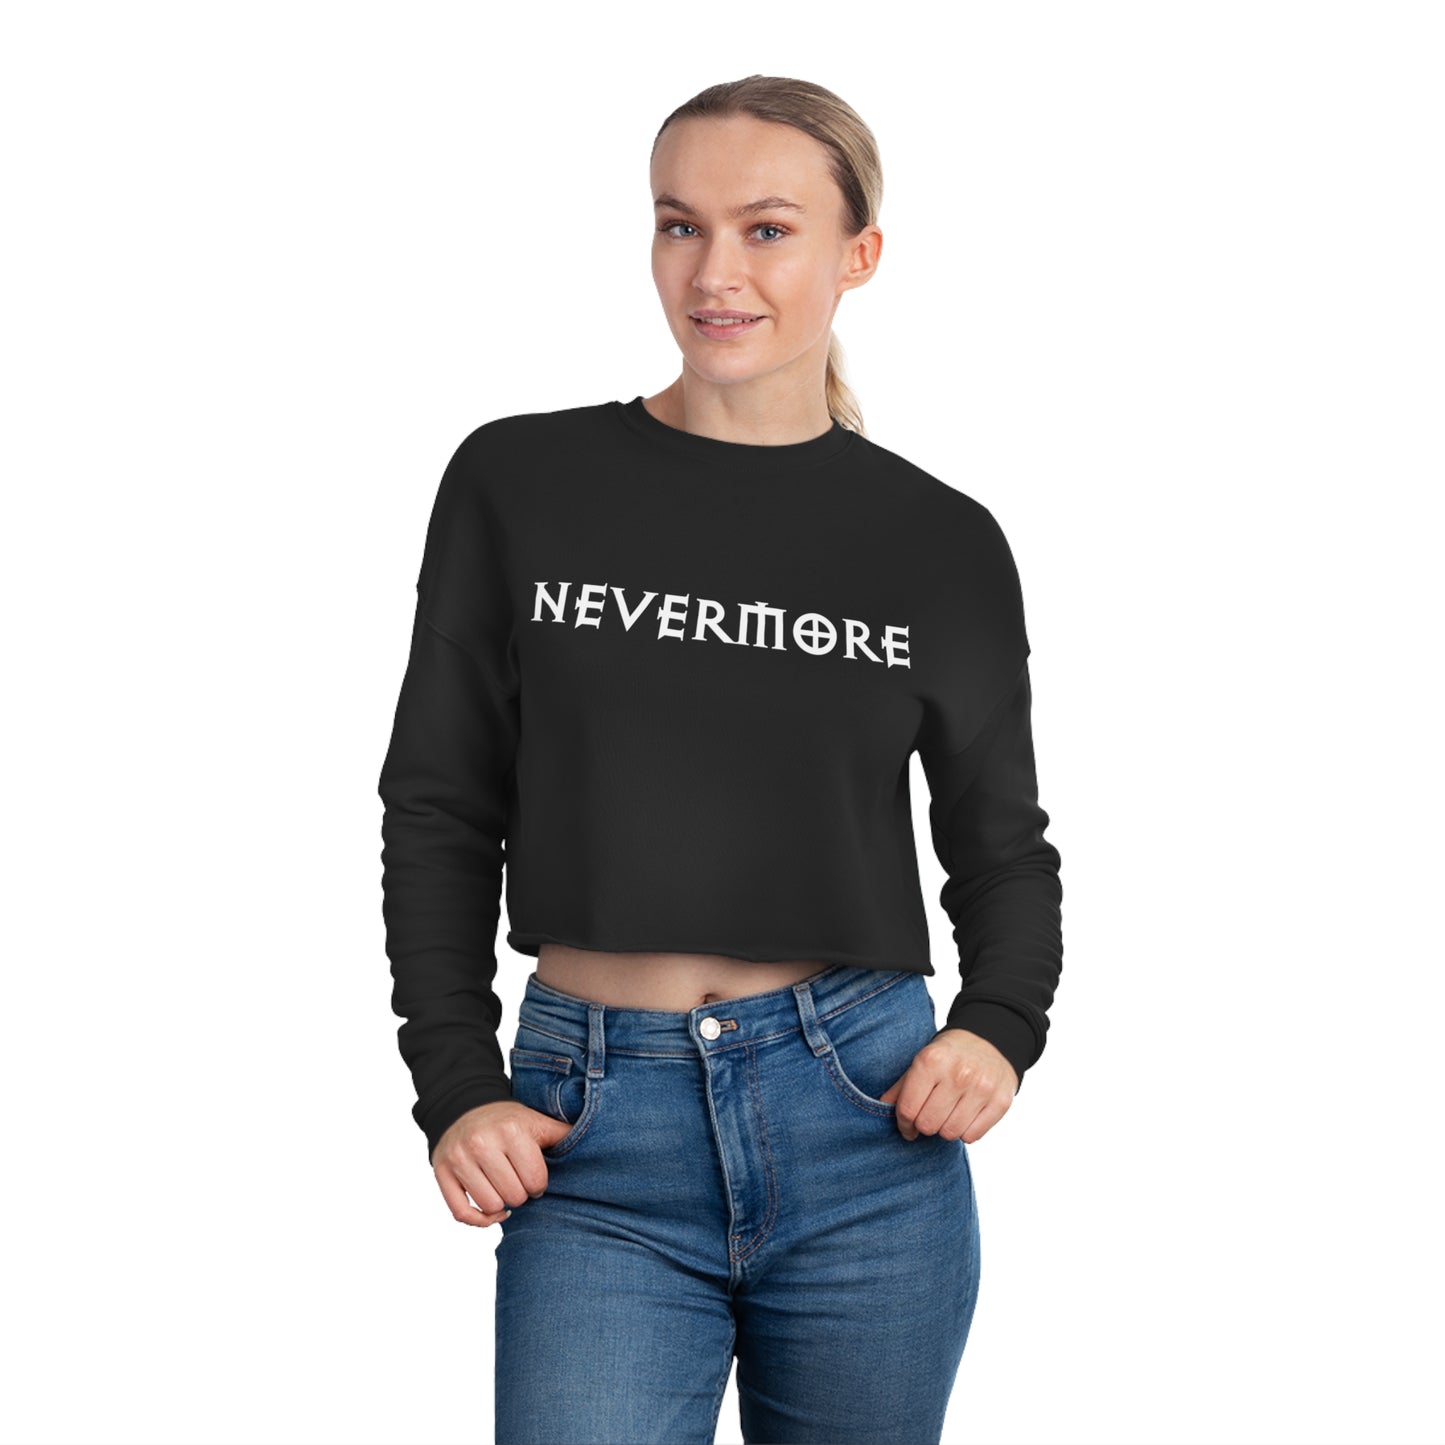 Freak House Nevermore Women's Cropped Sweatshirt